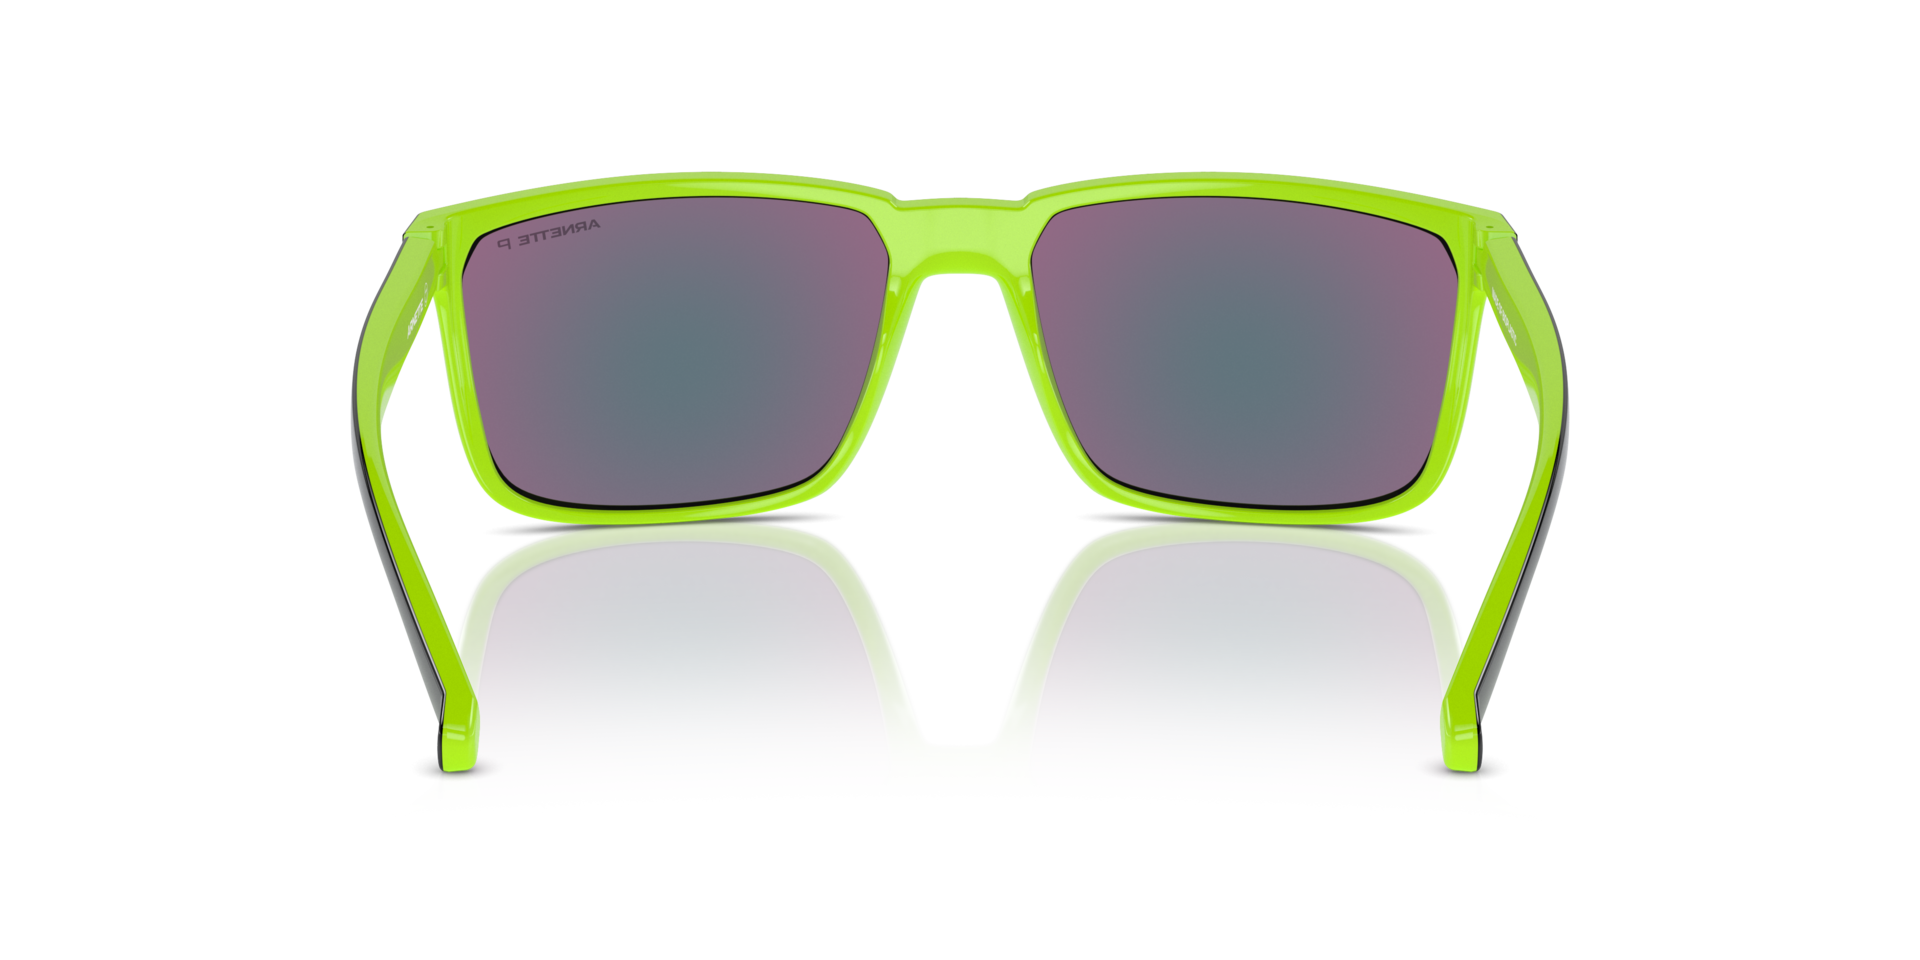 Das Bild zeigt die Sonnenbrille AN4251 29421I von der Marke Arnette in Schwarz/Grün.